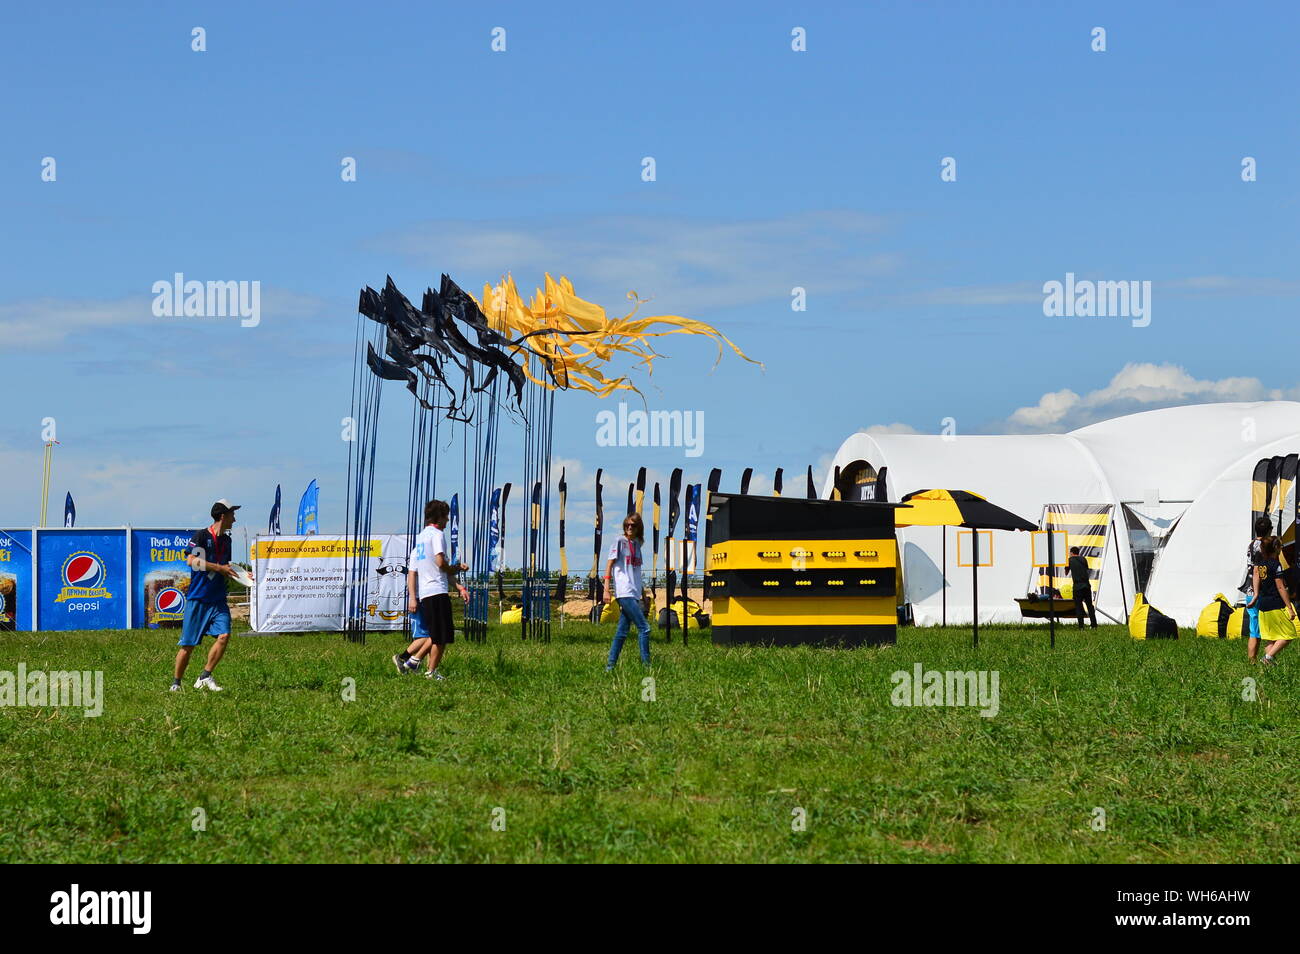 KOSINO, RUSSIA - Luglio 18, 2015: Beeline Pavilion, il panorama e la gente alla Alfa futuro popolo Festival che va da luglio 17-19 vicino a Nizhny Foto Stock